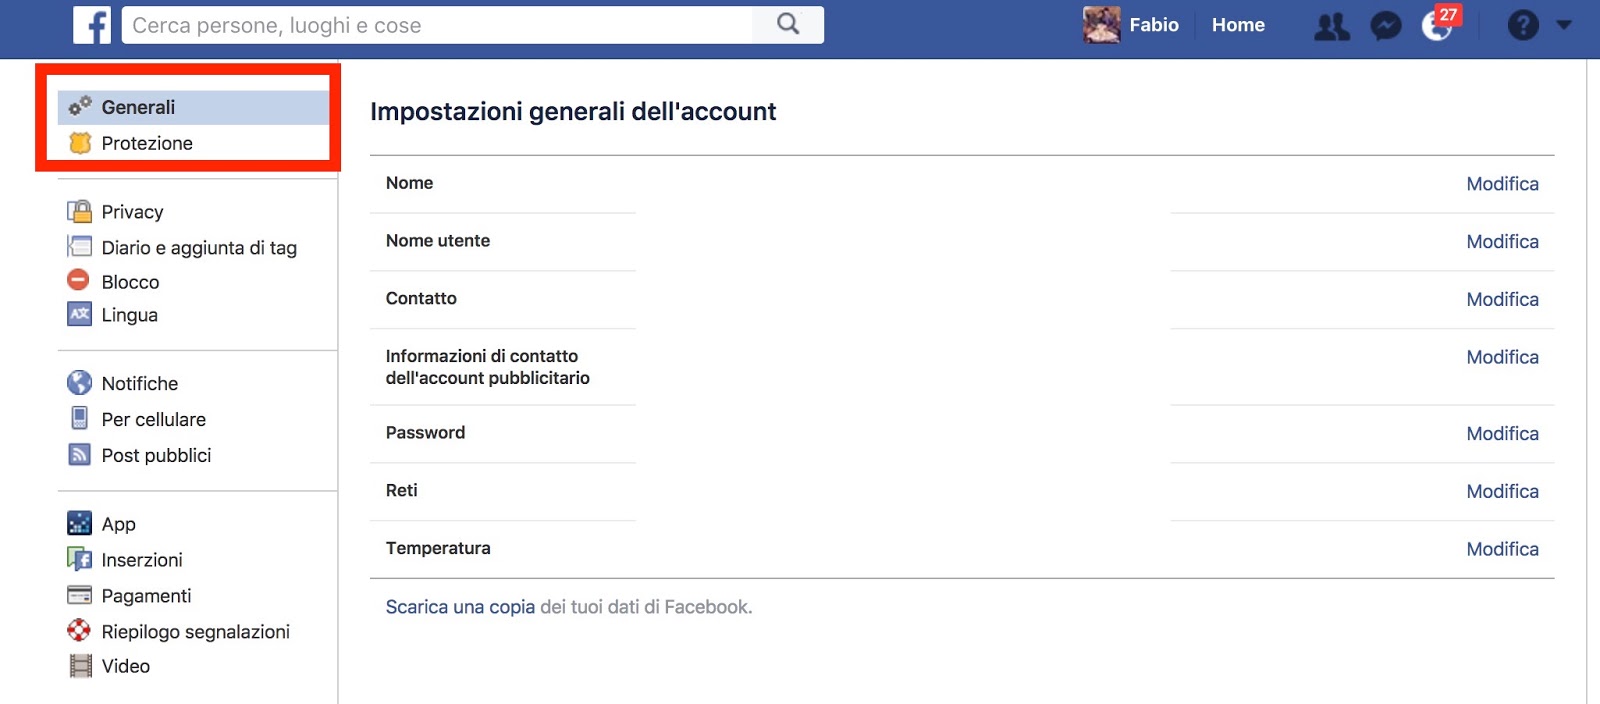 Come si elimina un profilo Facebook - impostazioni generali account